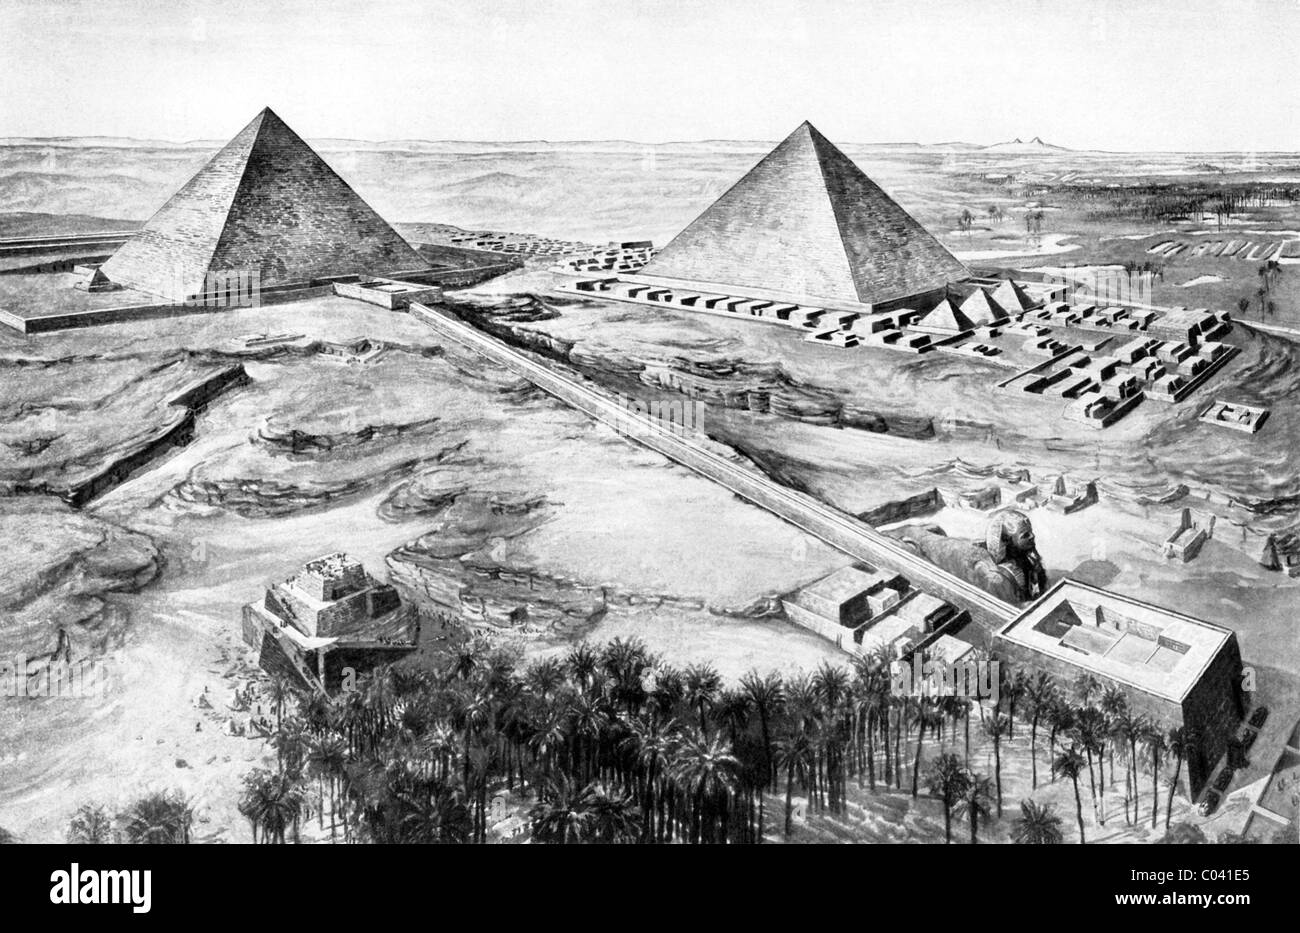 Diese frühen 1920er Jahren Abbildung zeigt die ersten und zweiten Pyramiden von Gizeh in Unterägypten, mit der großen Sphinx im Vordergrund. Stockfoto